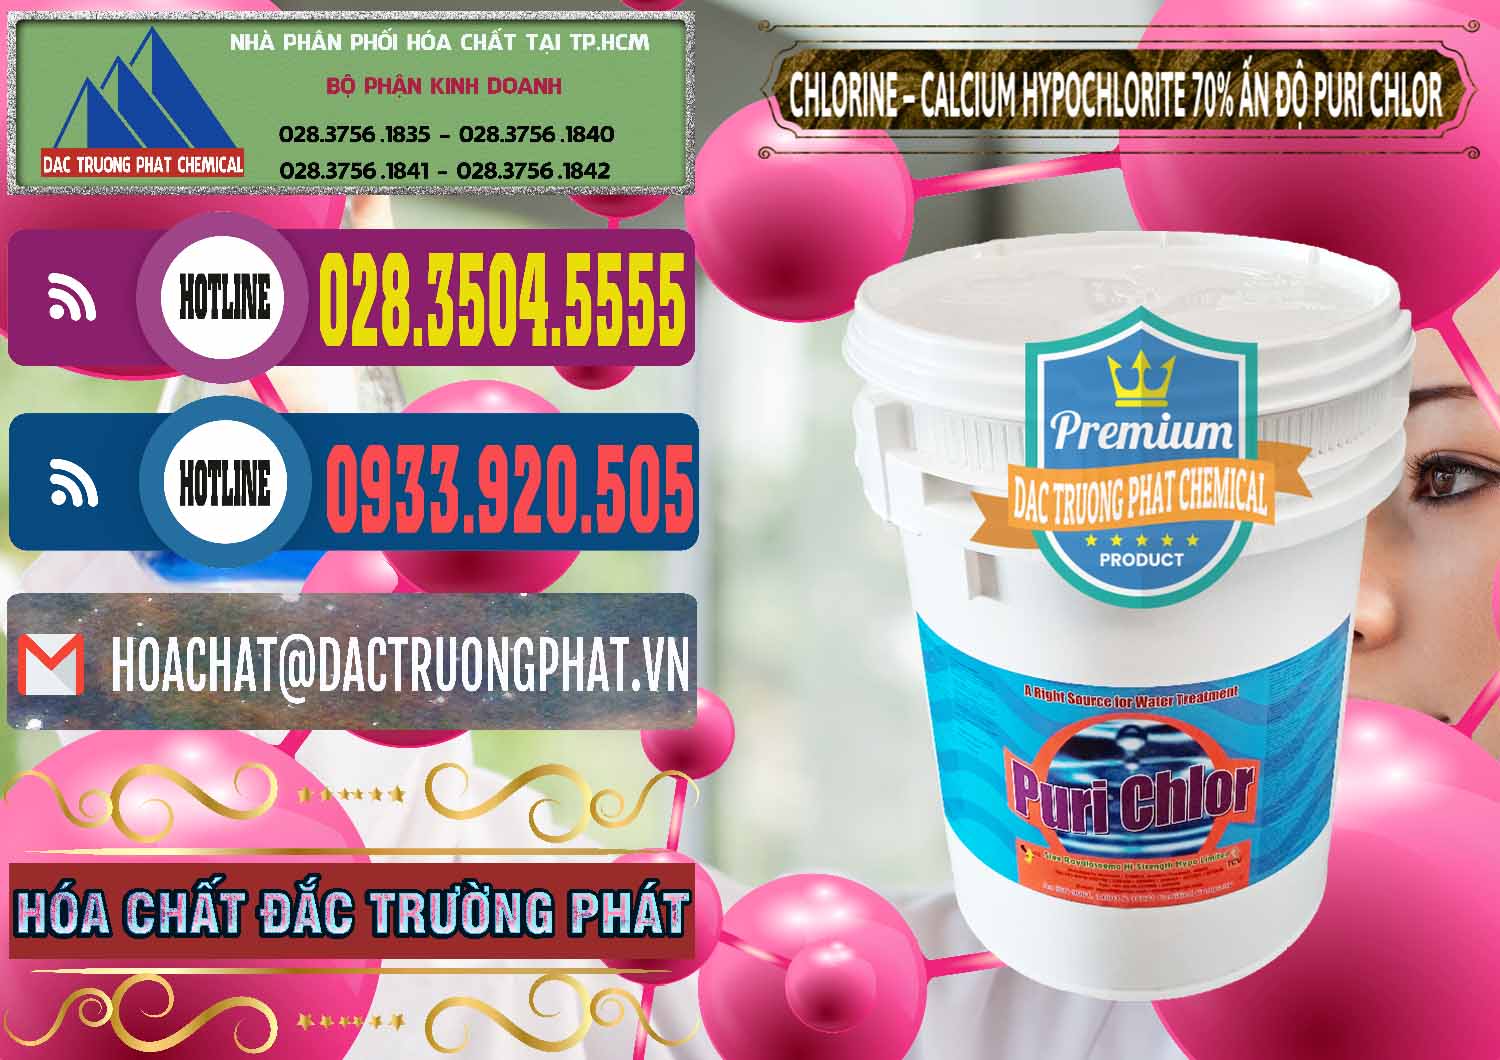 Chuyên phân phối - bán Chlorine – Clorin 70% Puri Chlo Ấn Độ India - 0123 - Cty bán và cung cấp hóa chất tại TP.HCM - muabanhoachat.com.vn